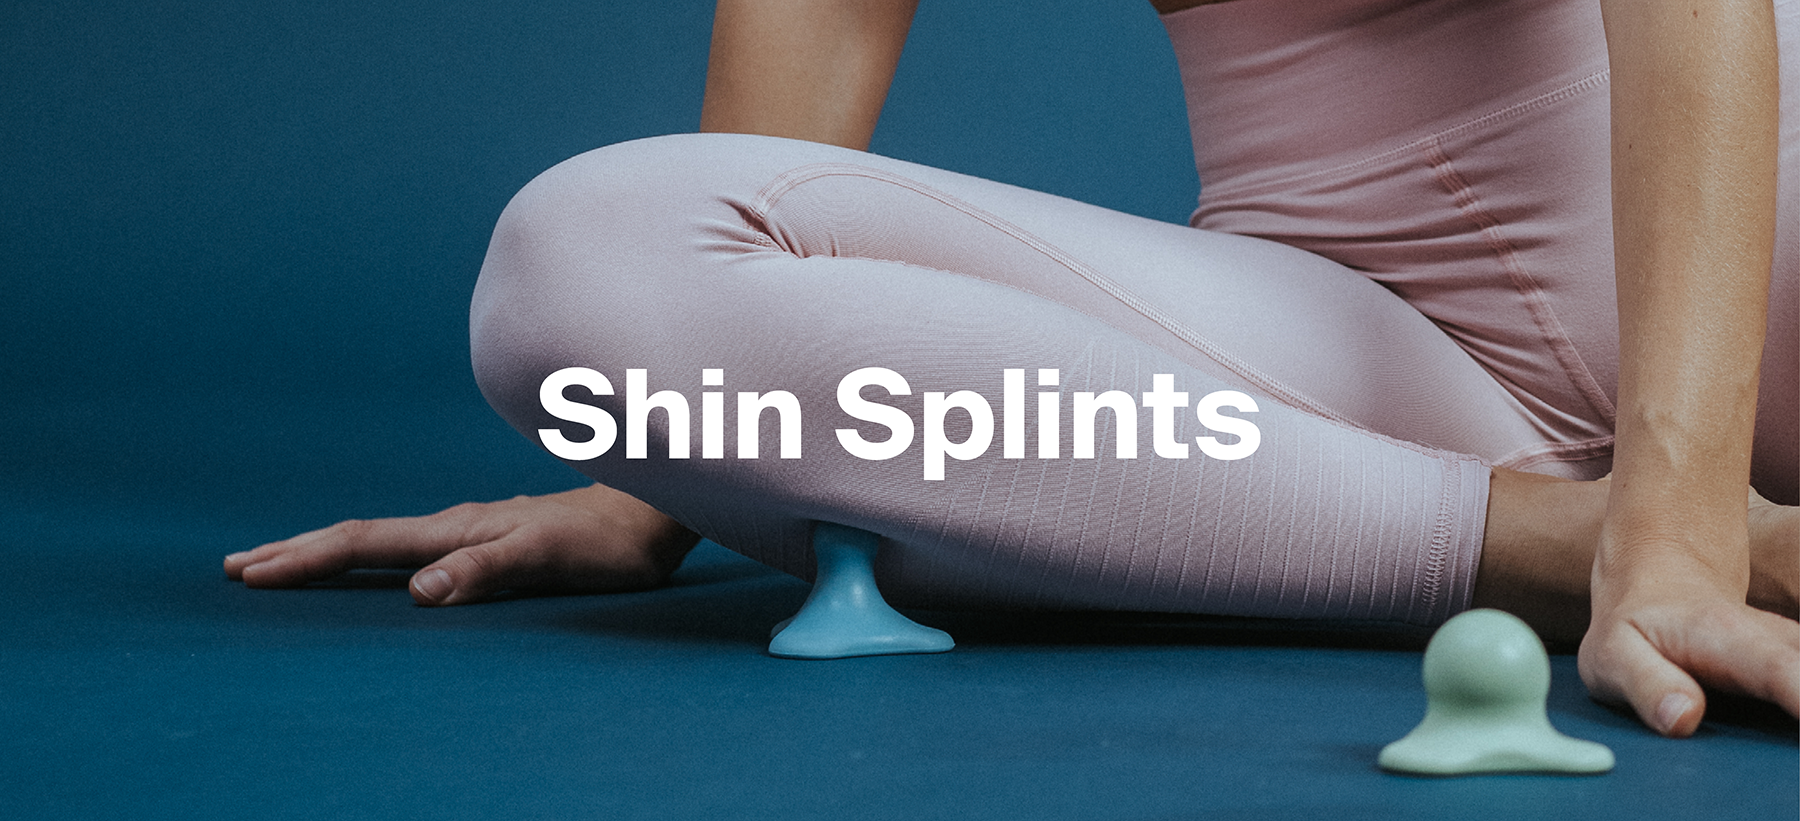 Das Shin Splint ist ein nerviger Schmerz im Bereich des Schienbeins. Diese Übungen mit den Triggerdingern können dir dabei helfen, den Schmerz loszuwerden